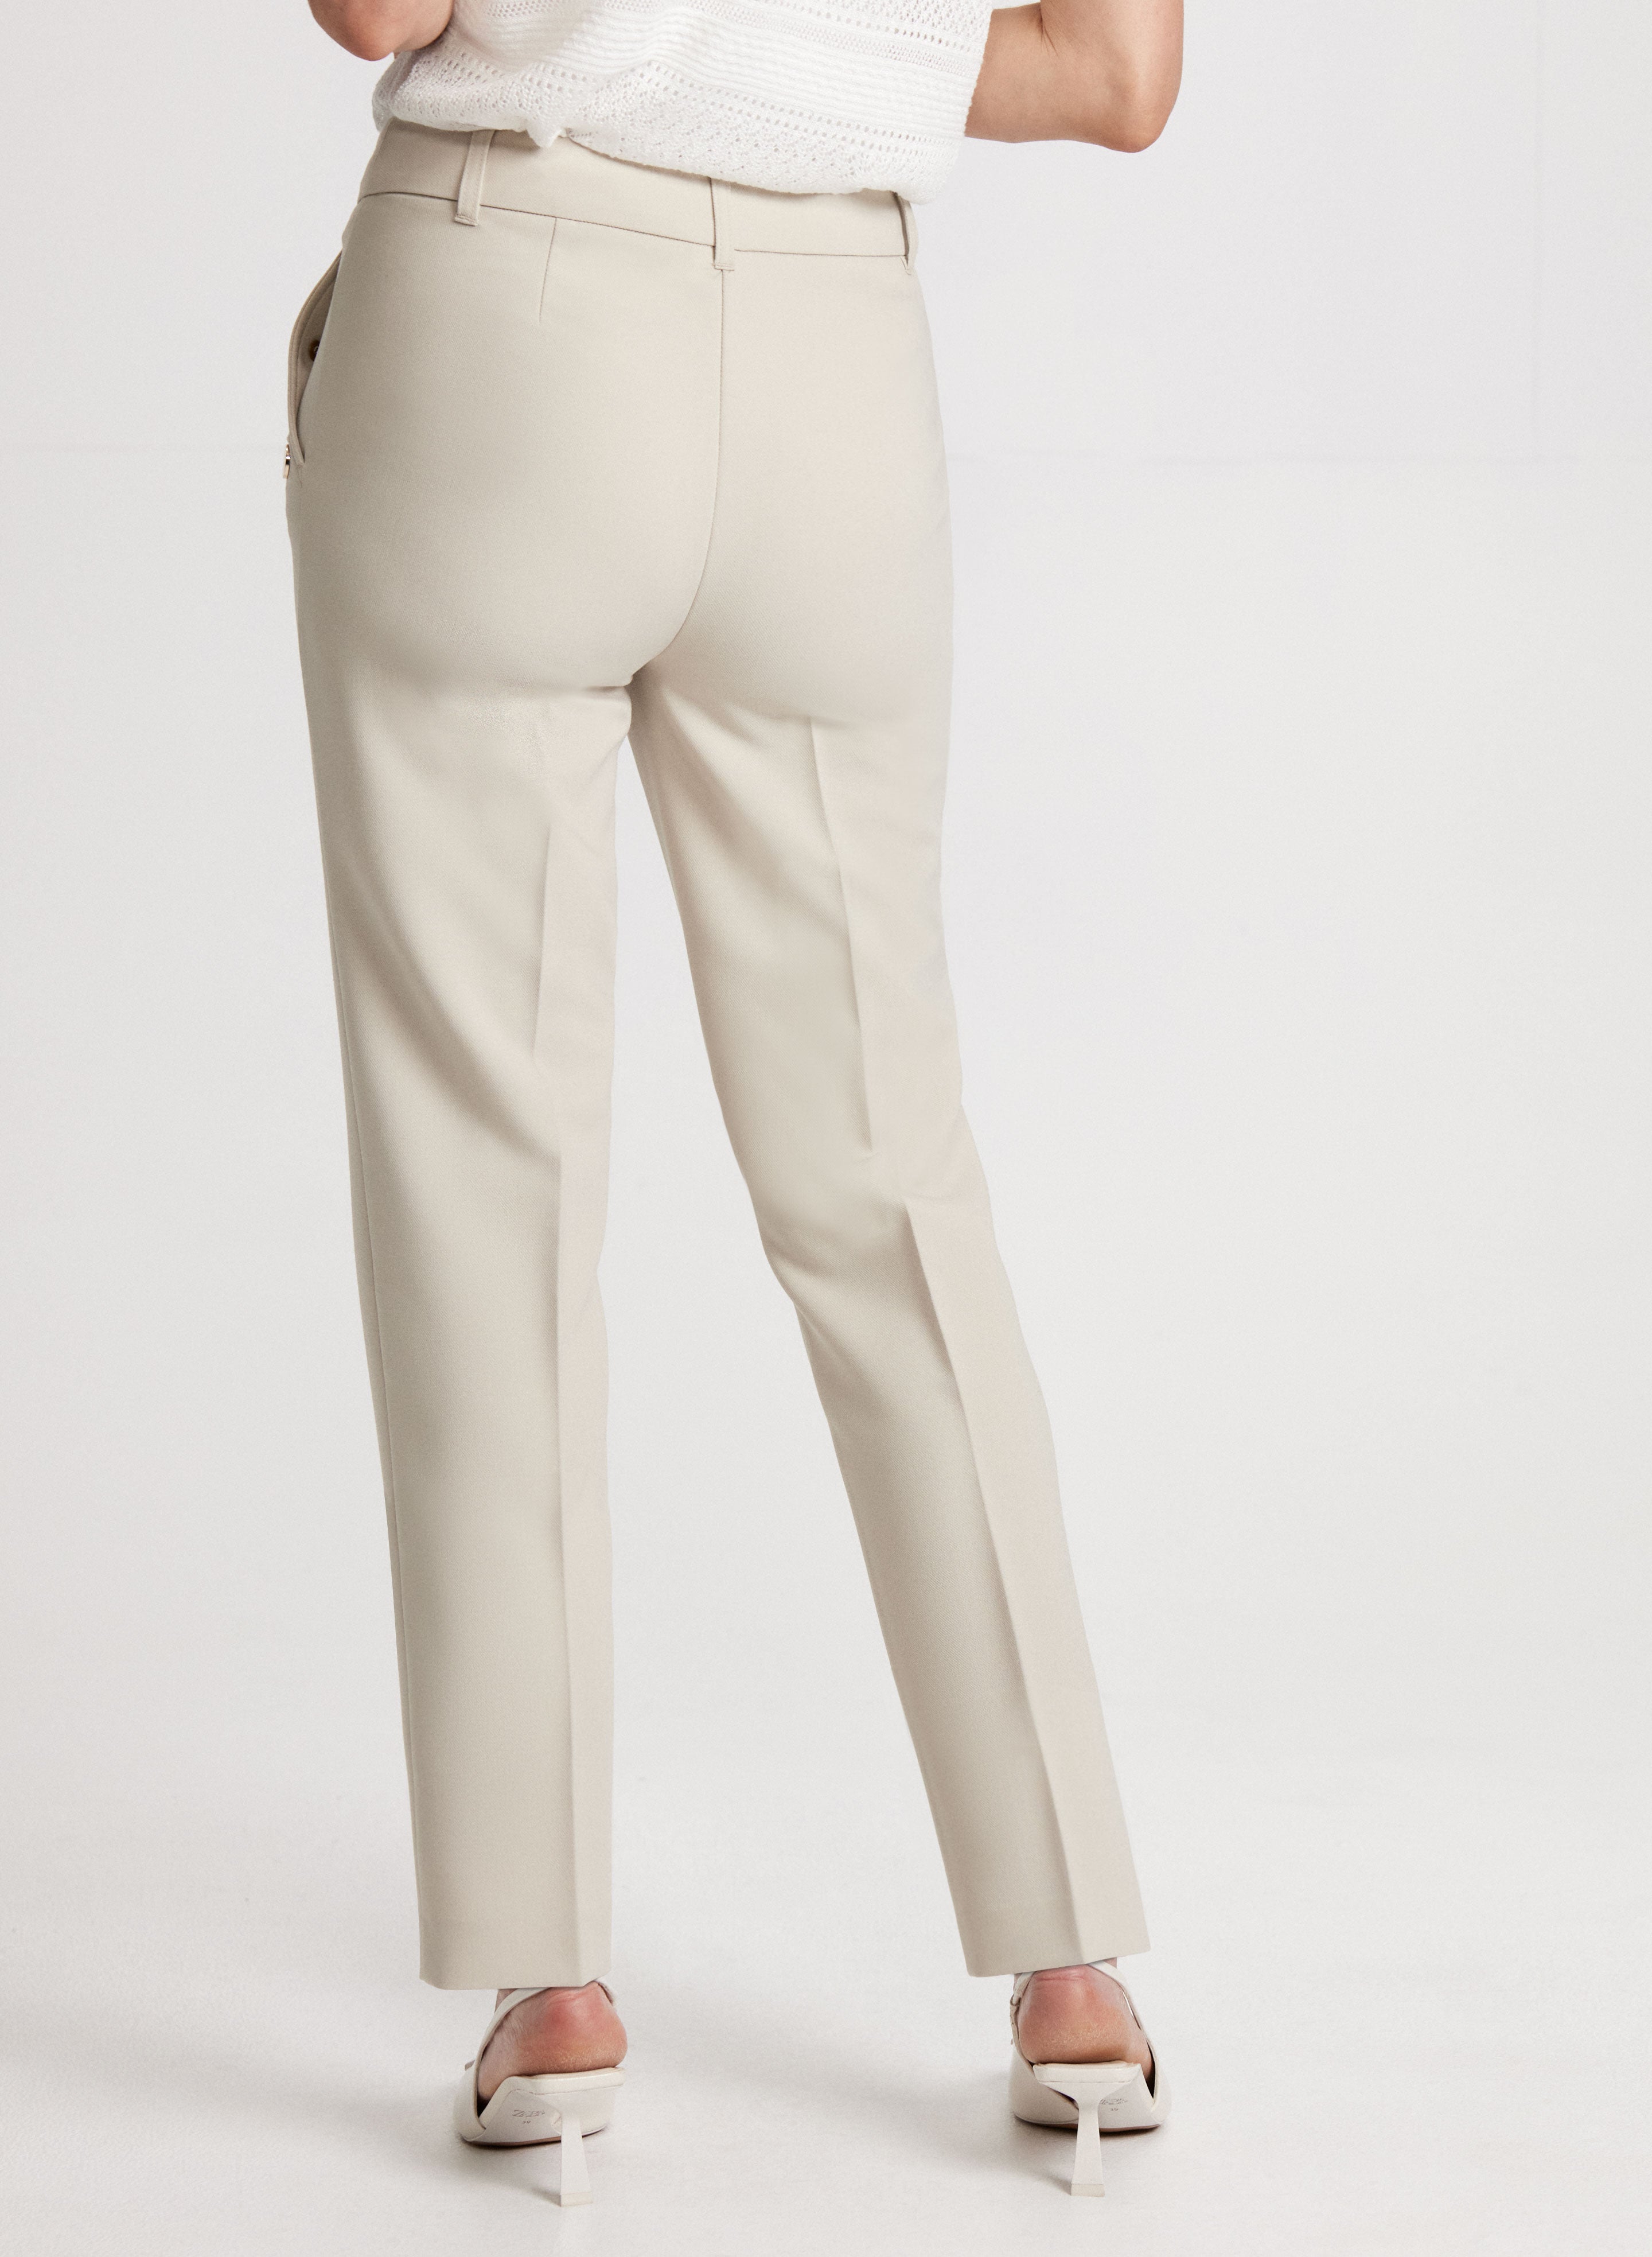 LLTT Fitness Female Polyester Ankle-Length Breathable Pants Women